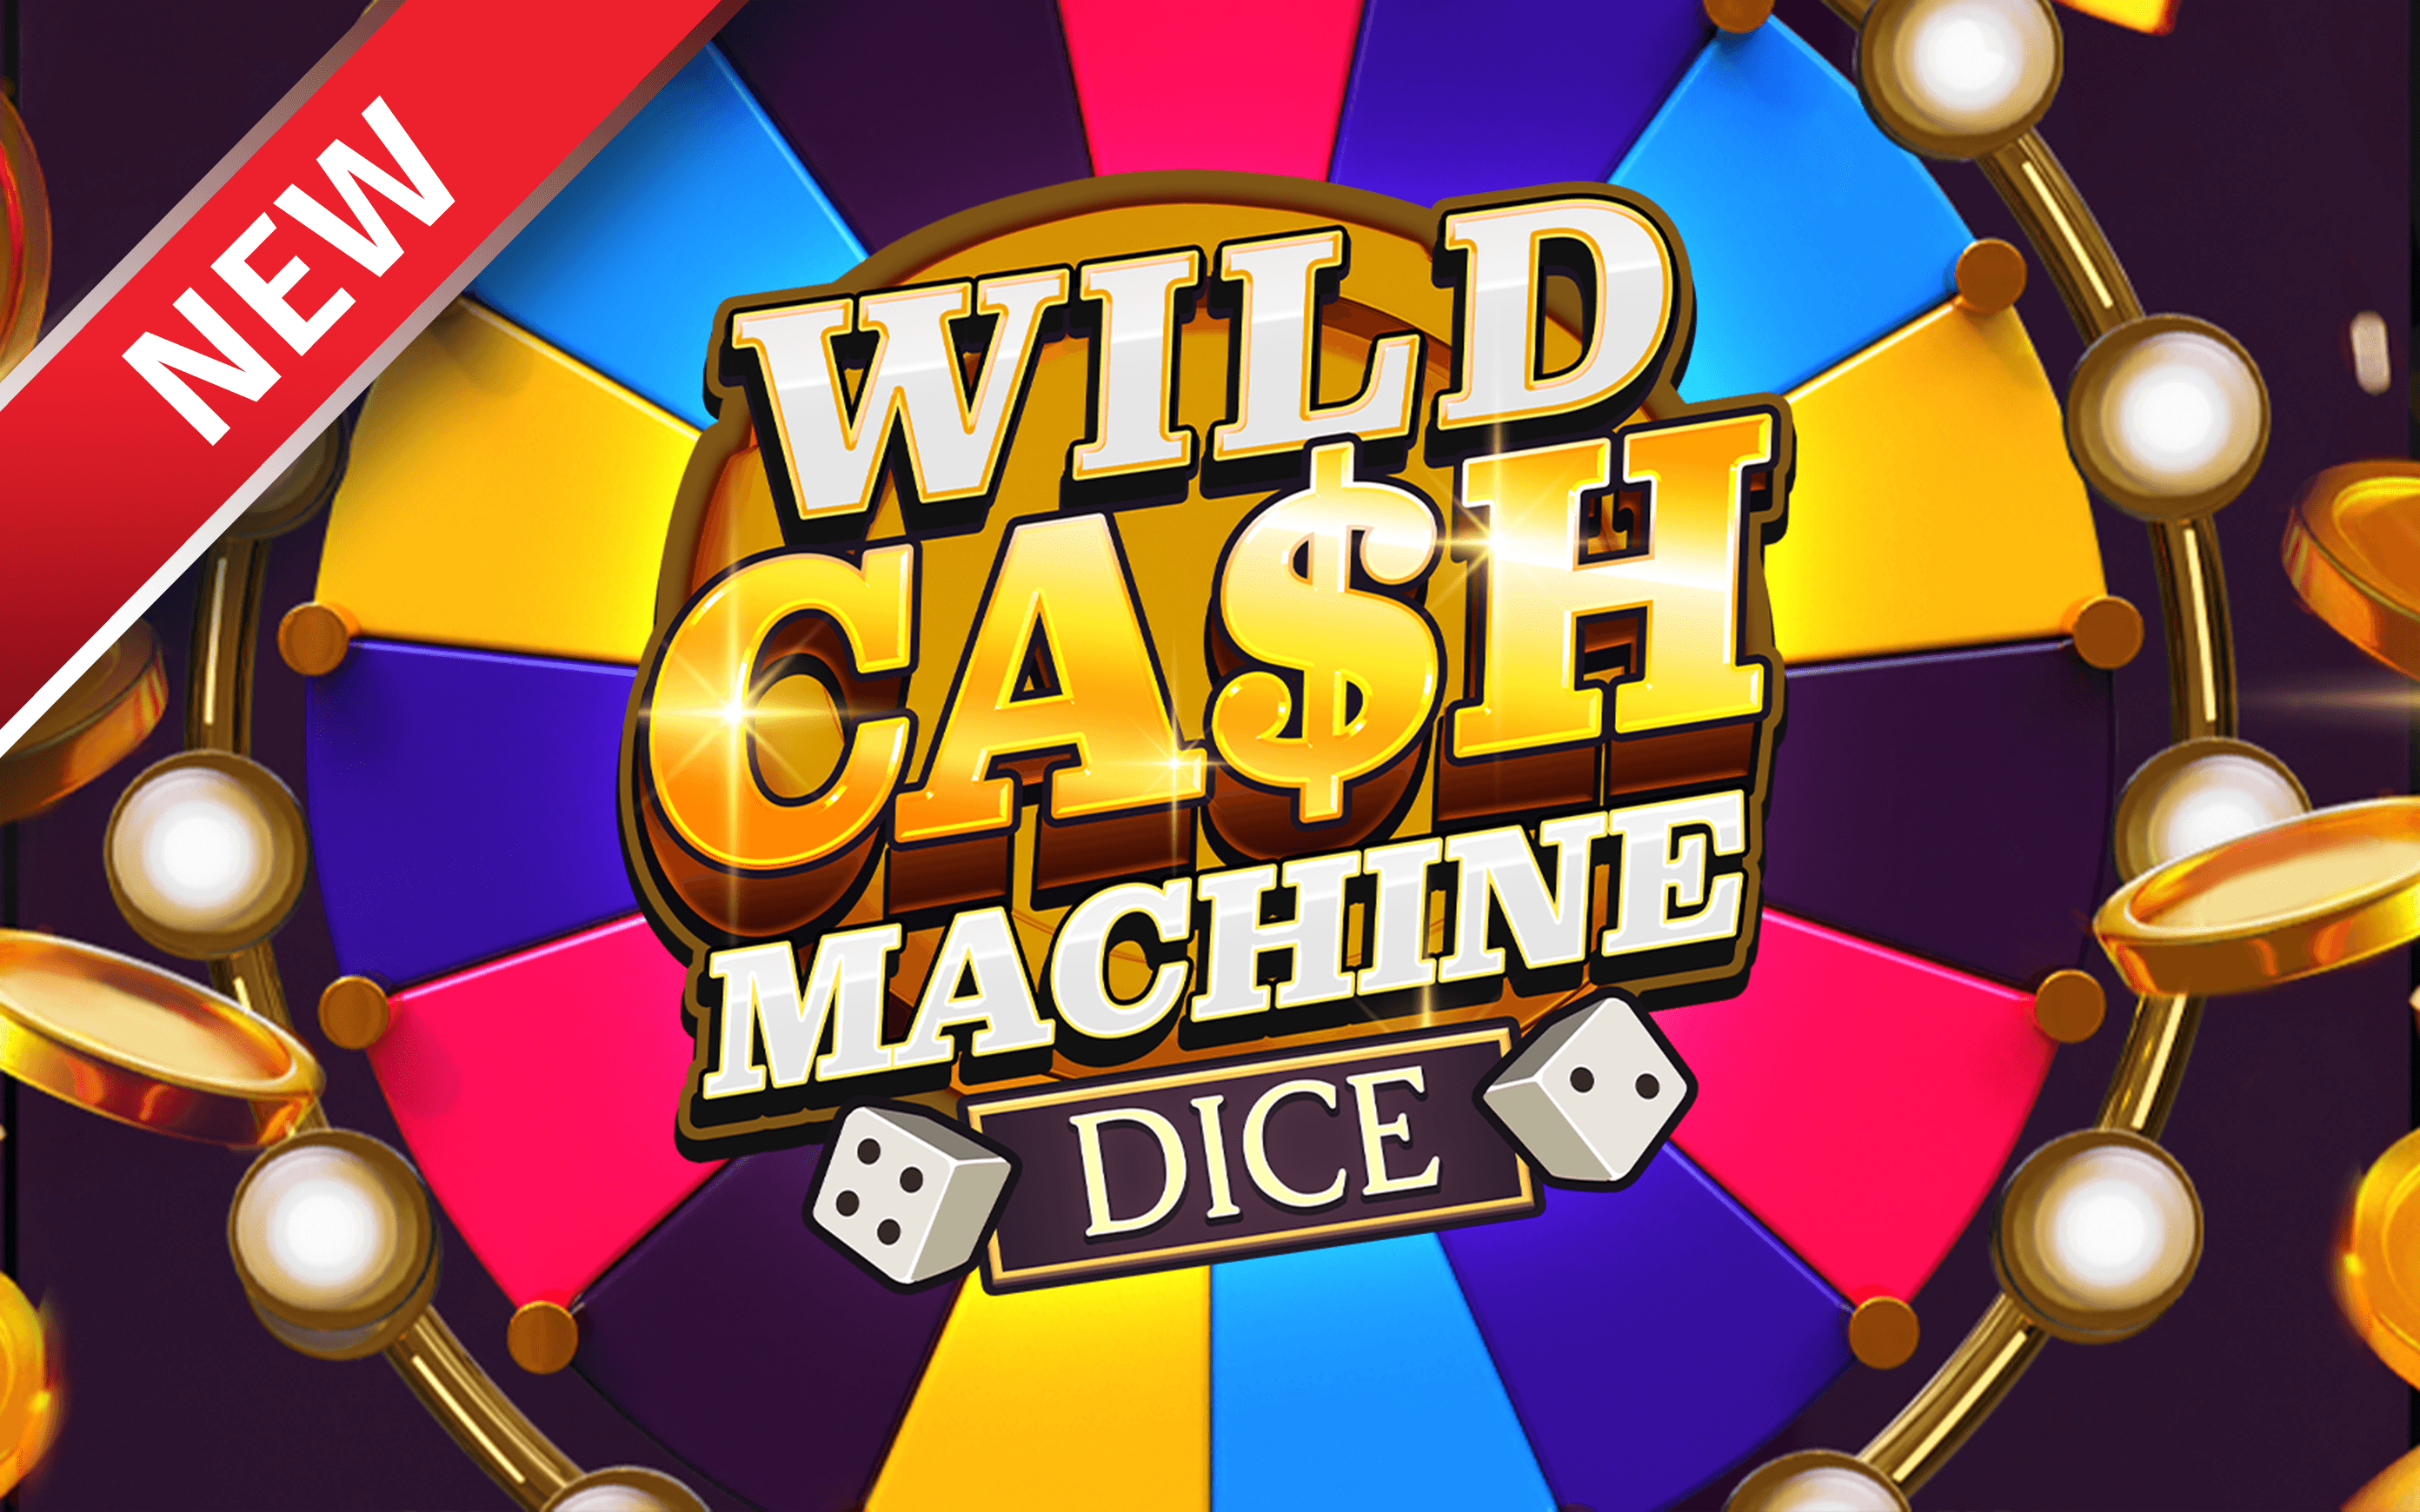 Gioca a Wild Cash Machine Dice sul casino online Starcasino.be